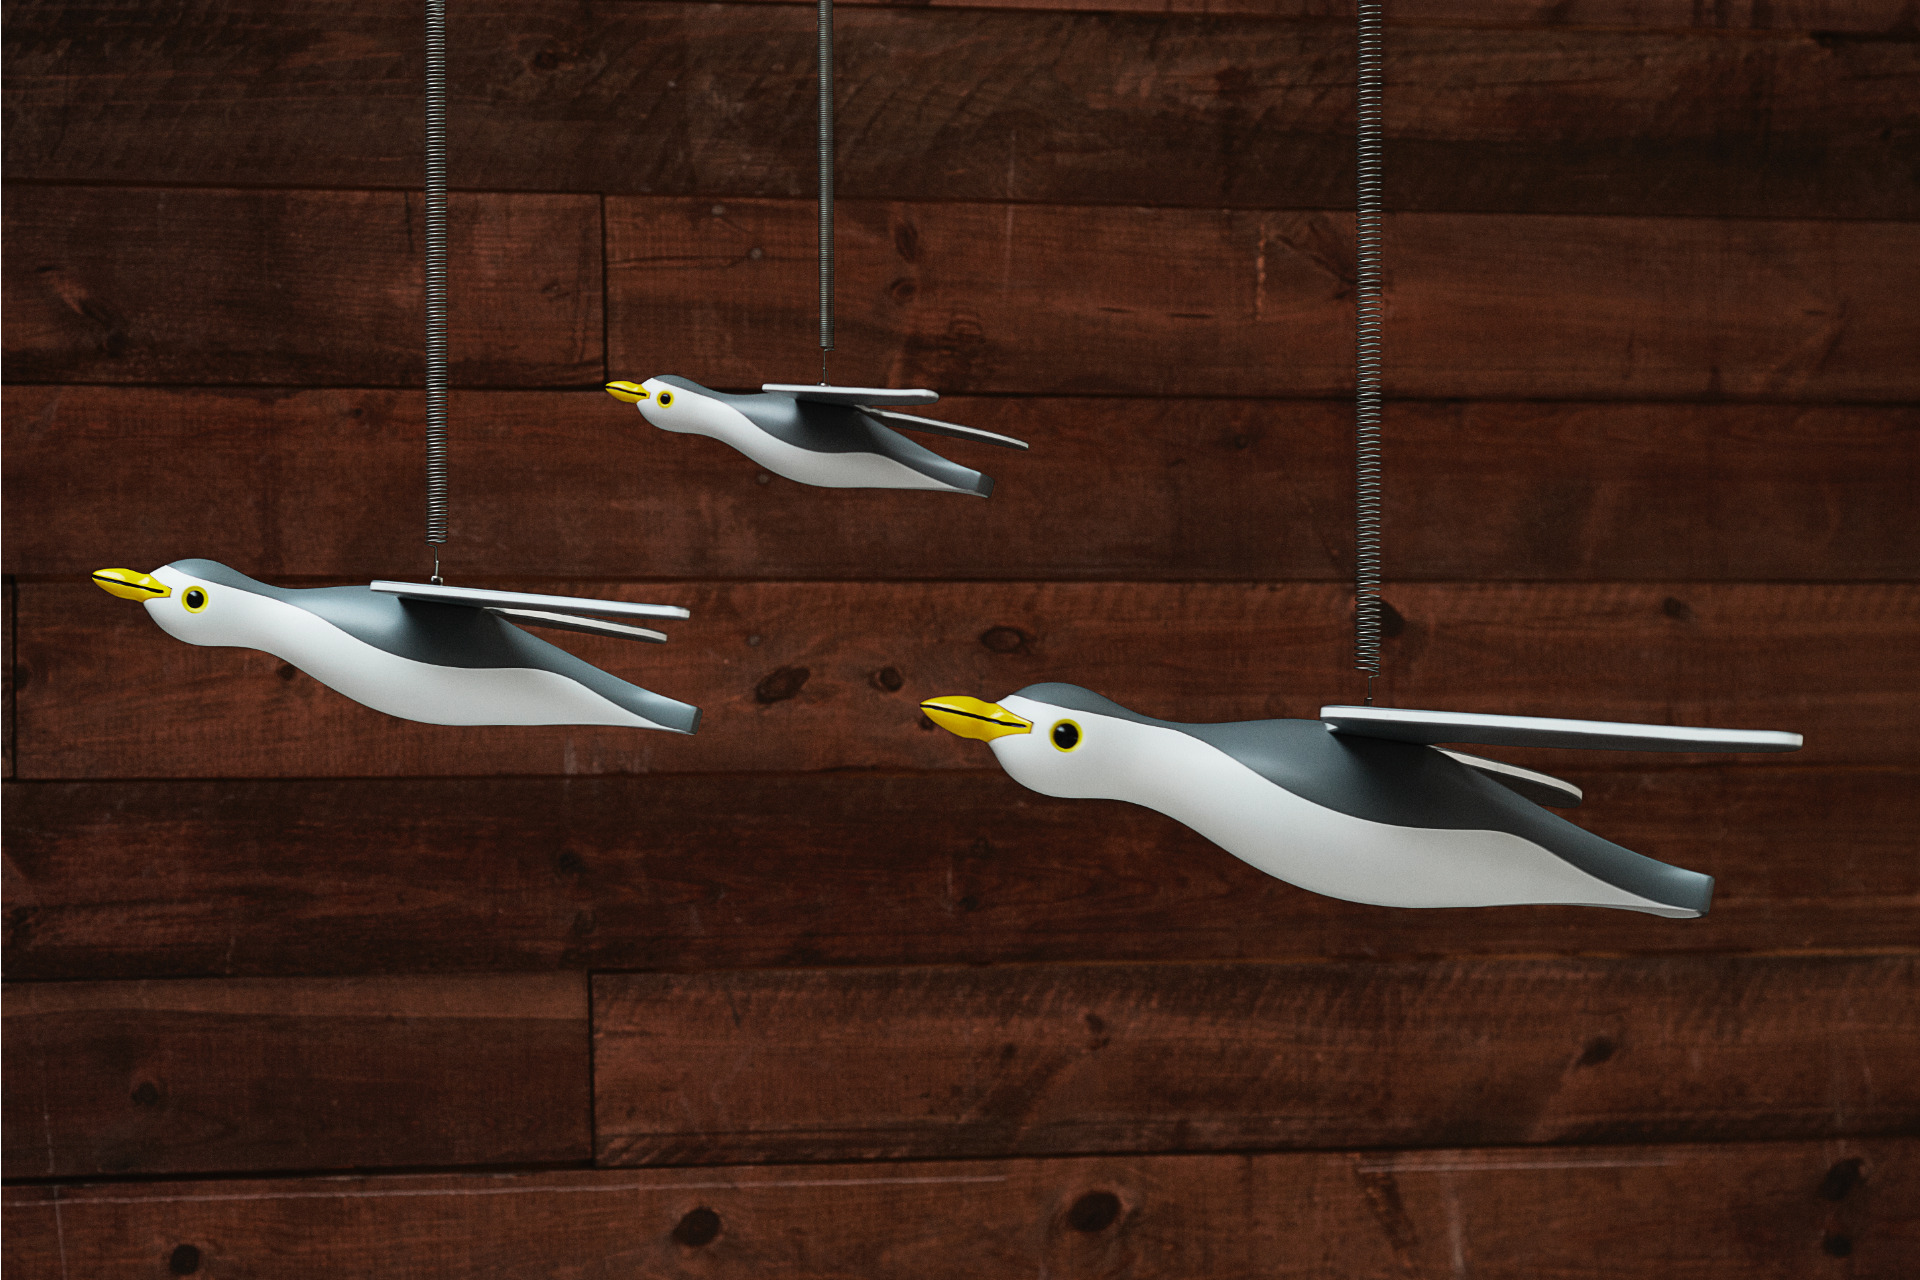 Three Seagulls hanging on strings, design by Kay Bojesen